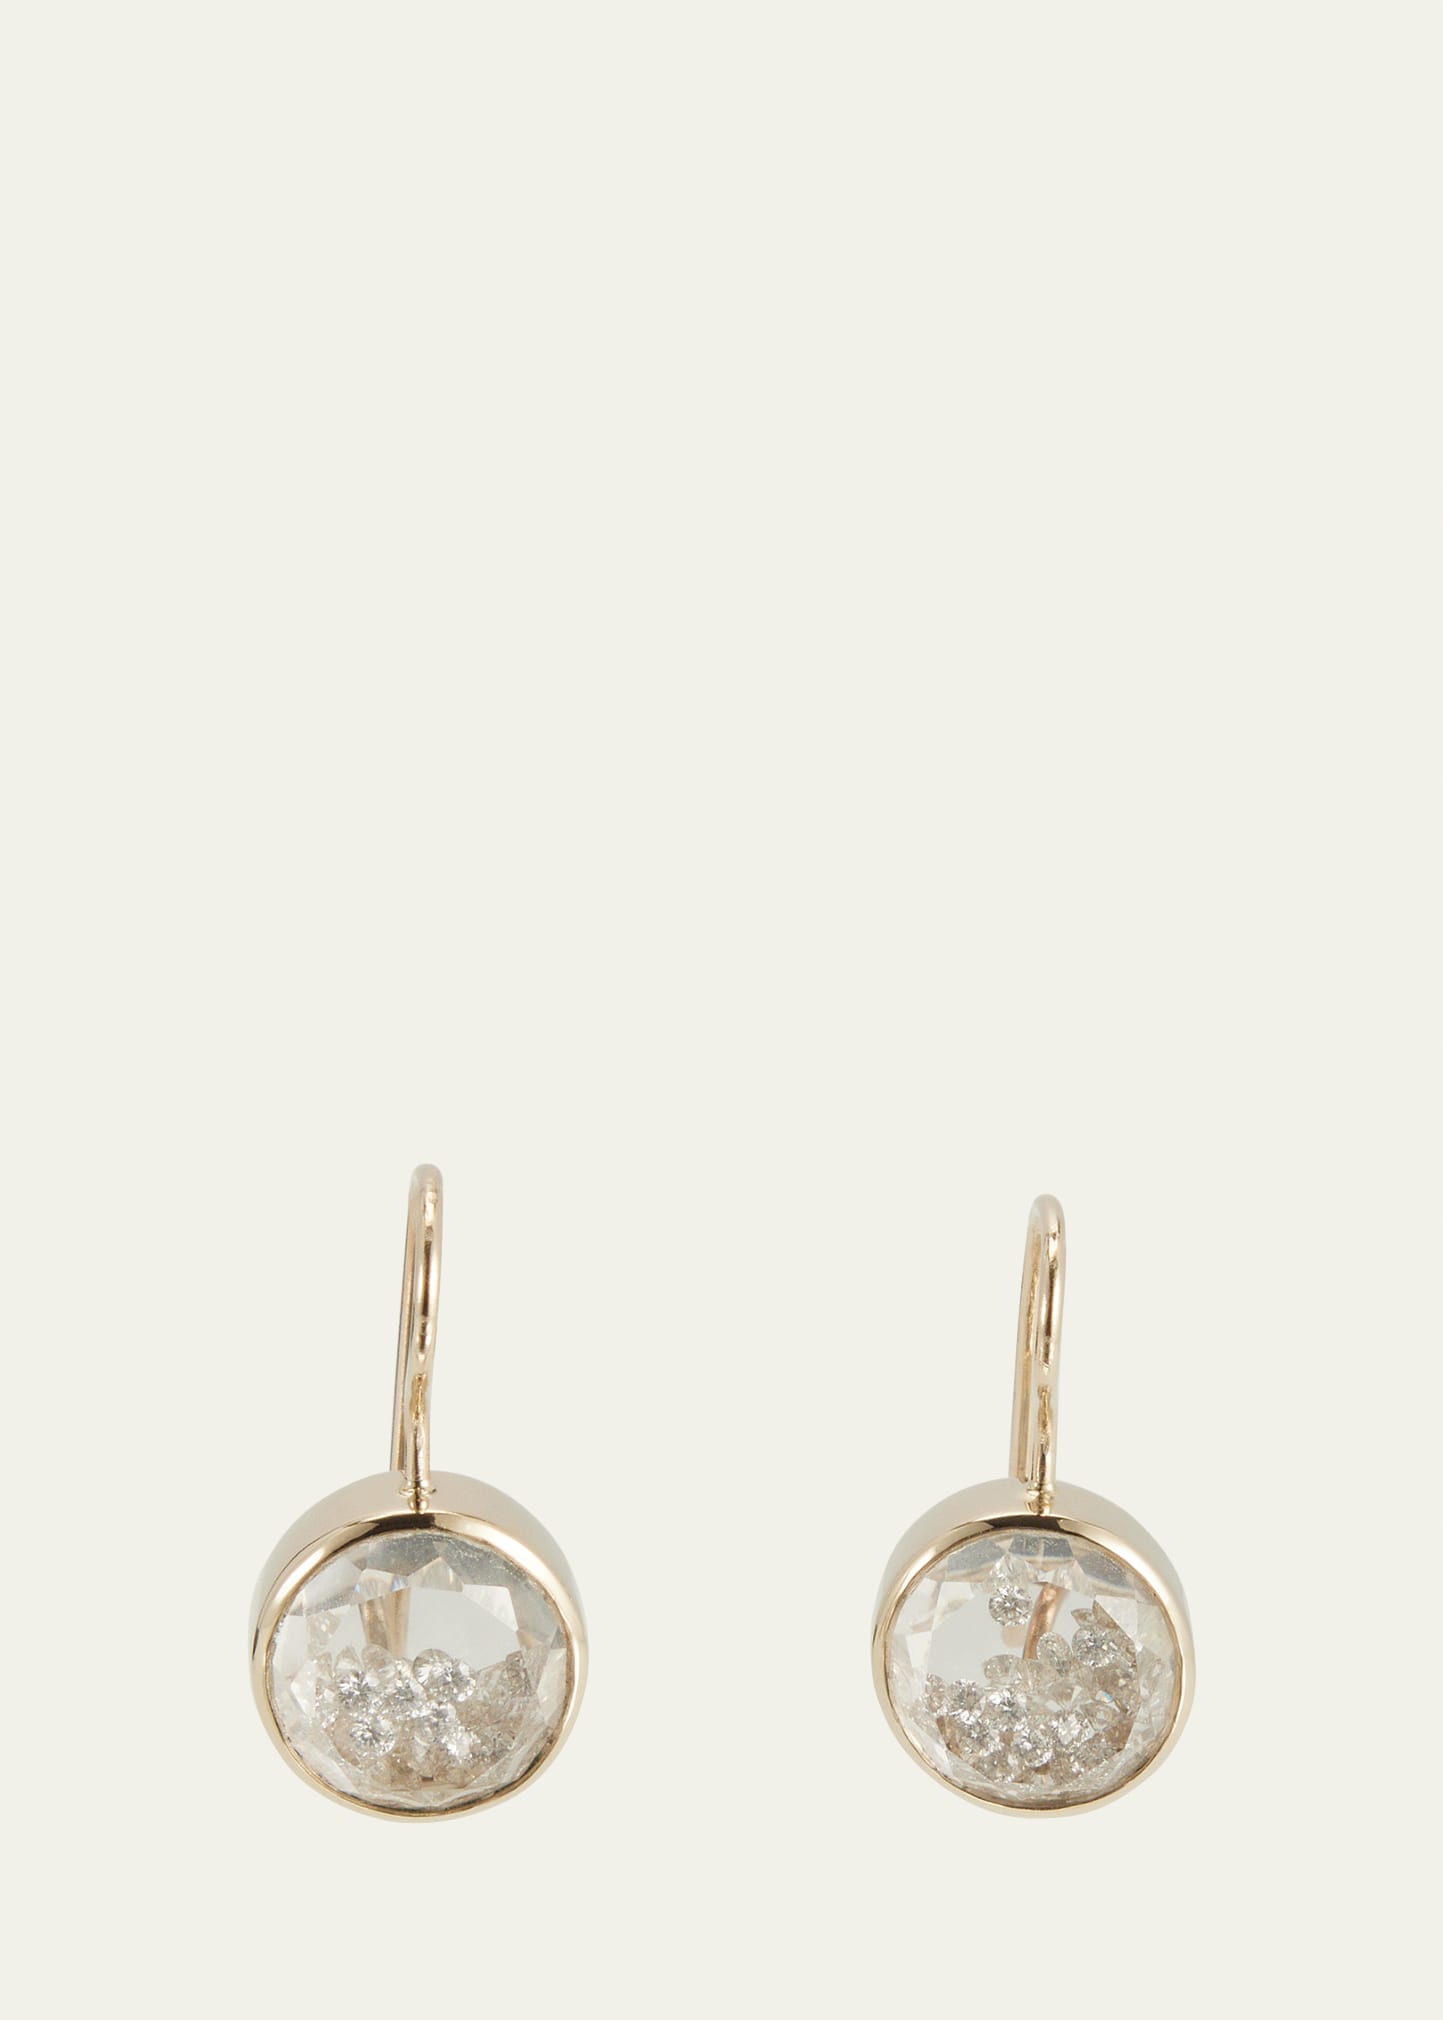 18k White Gold Naipe Diamond Kaleidoscope Shaker Earrings